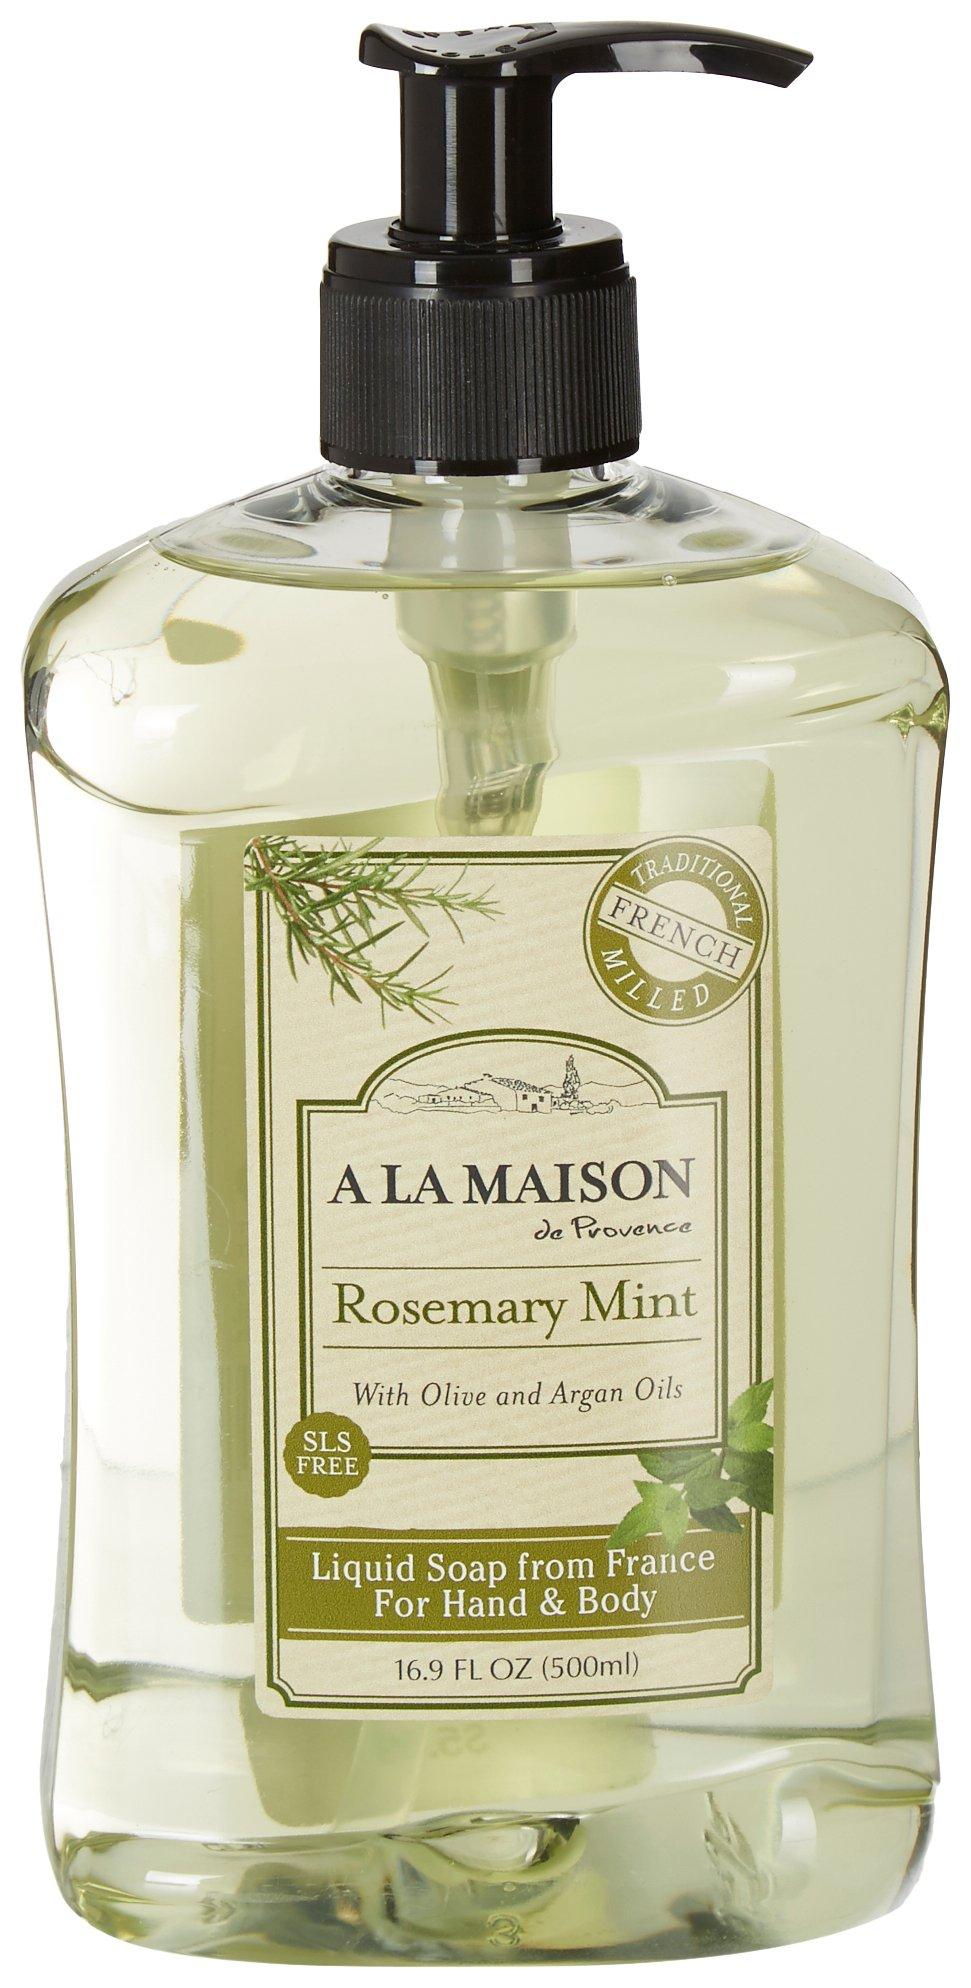 A La Maison Rosemary Mint Hand & Body Liquid Soap